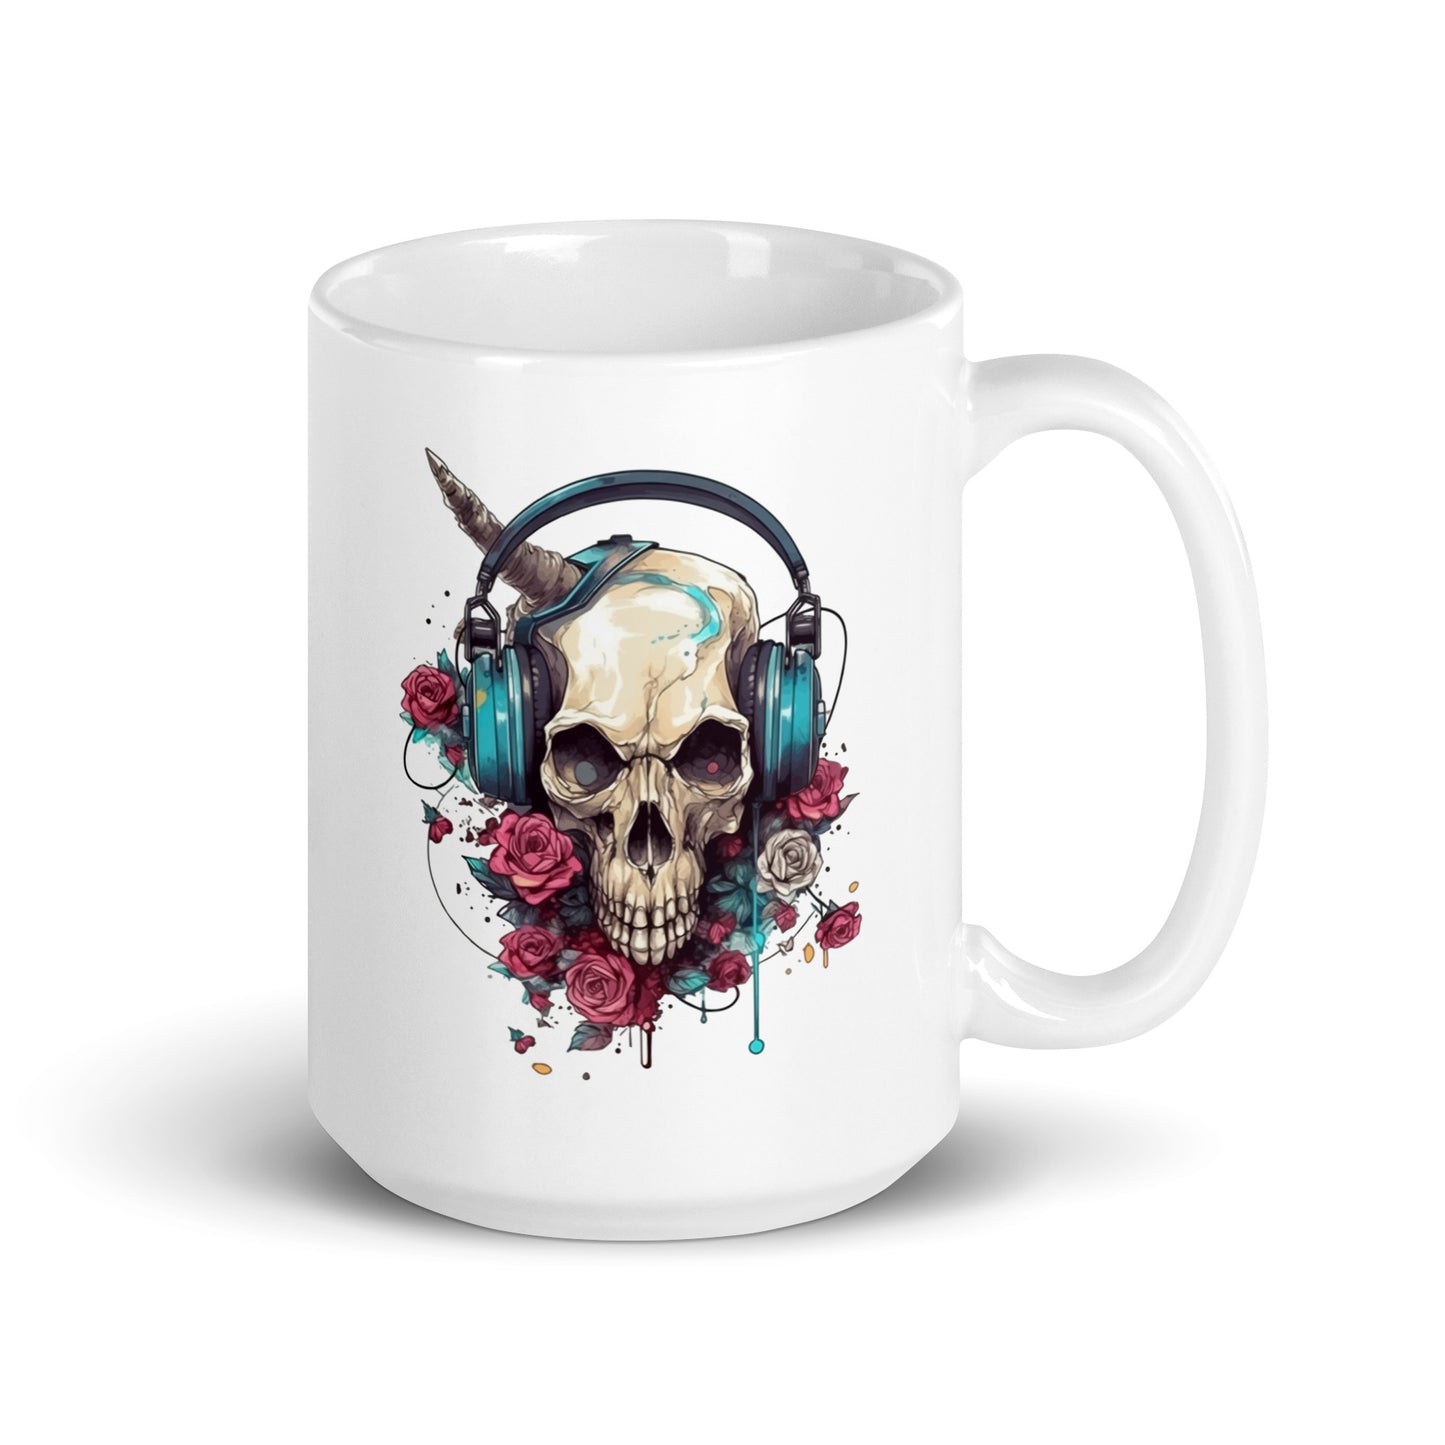 Fantastic portrait monster, Fantasy illustration, Skull in headphones and flowers, Mutant skull - White glossy mug